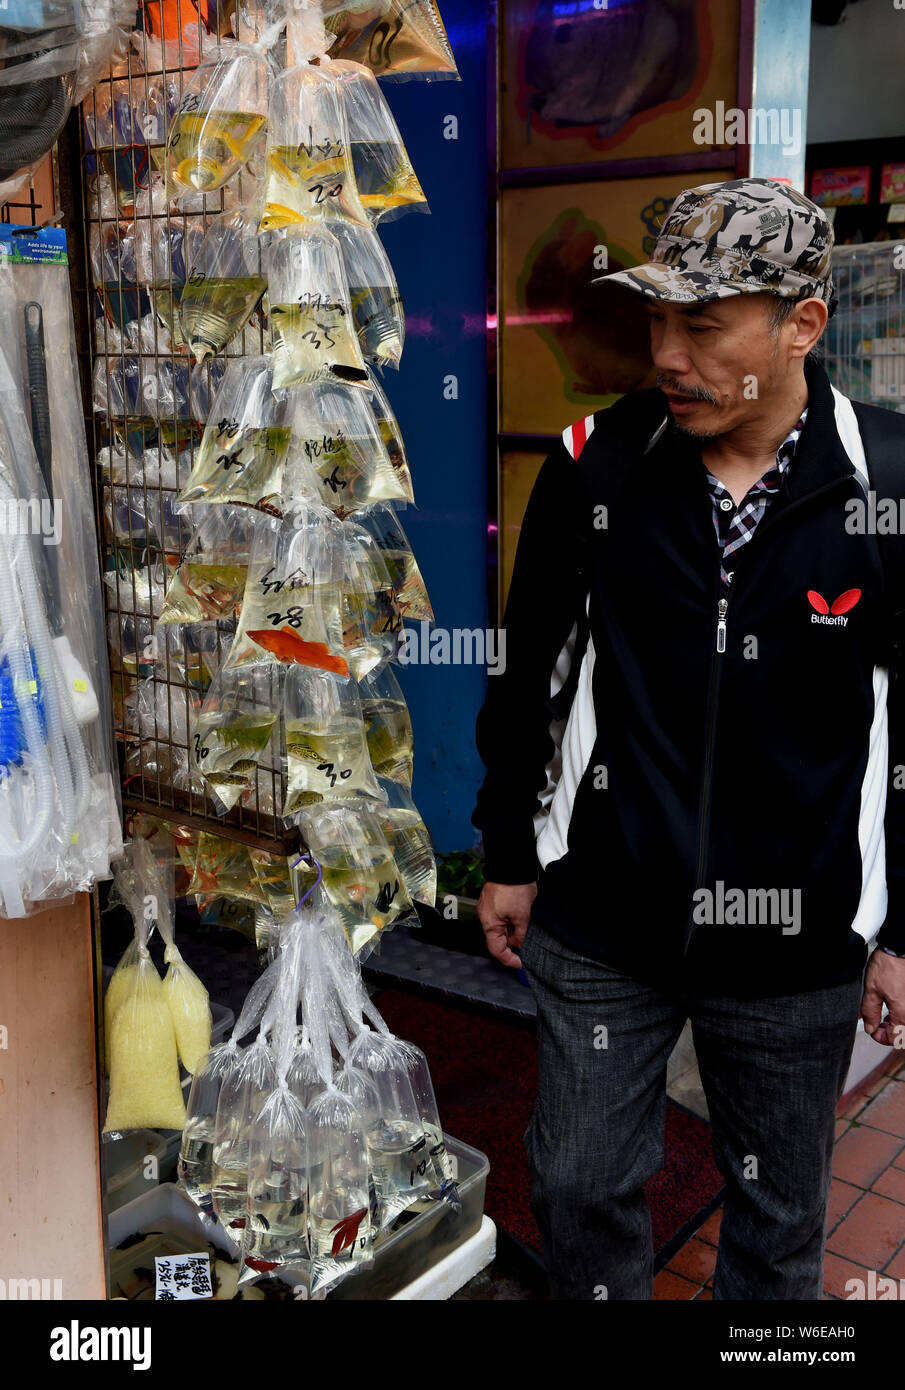 Un visiteur consulte les poissons et produits aquatiques vendus dans des sacs en plastique dans un magasin situé dans la rue Tung Choi à Hong Kong, Chine, 20 mars 2018. Le Tung Choi St Banque D'Images